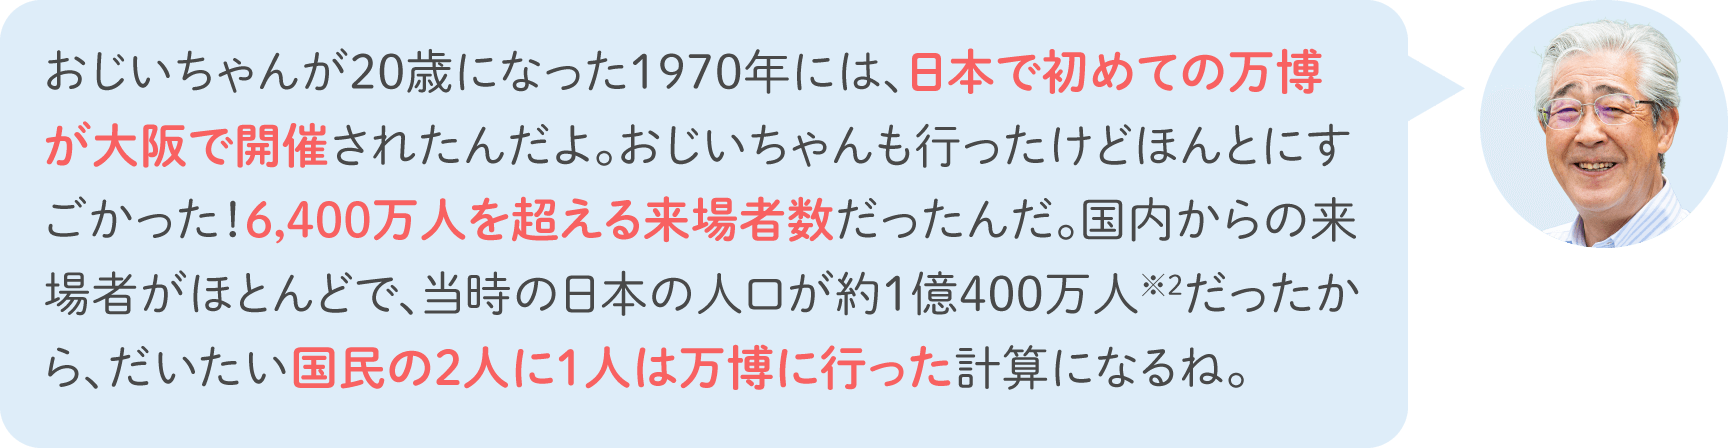 おじいちゃんが20歳になった1970年には、日本で初めての万博が大阪で開催されたんだよ。おじいちゃんも行ったけどほんとにすごかった！6,400万人を超える来場者数だったんだ。国内からの来場者がほとんどで、当時の日本の人口が約1億400万人※2だったから、だいたい国民の2人に1人は万博に行った計算になるね。